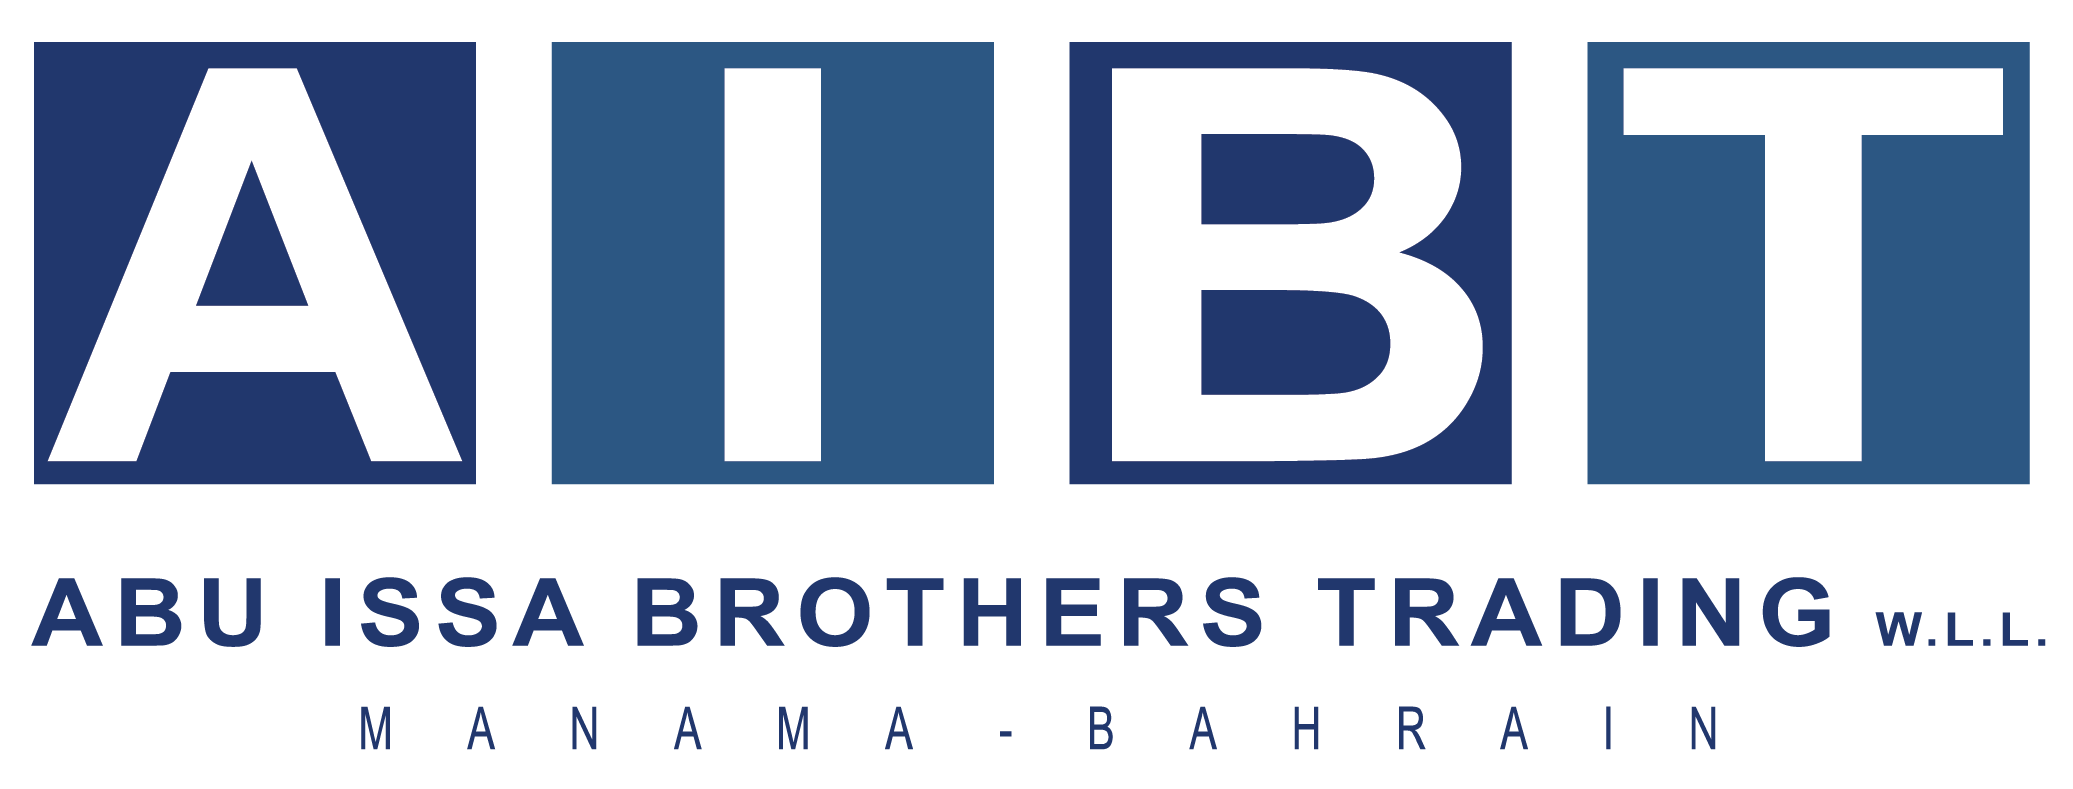 AIBT Bahrain - Abu Issa Brothers Trading W.L.L